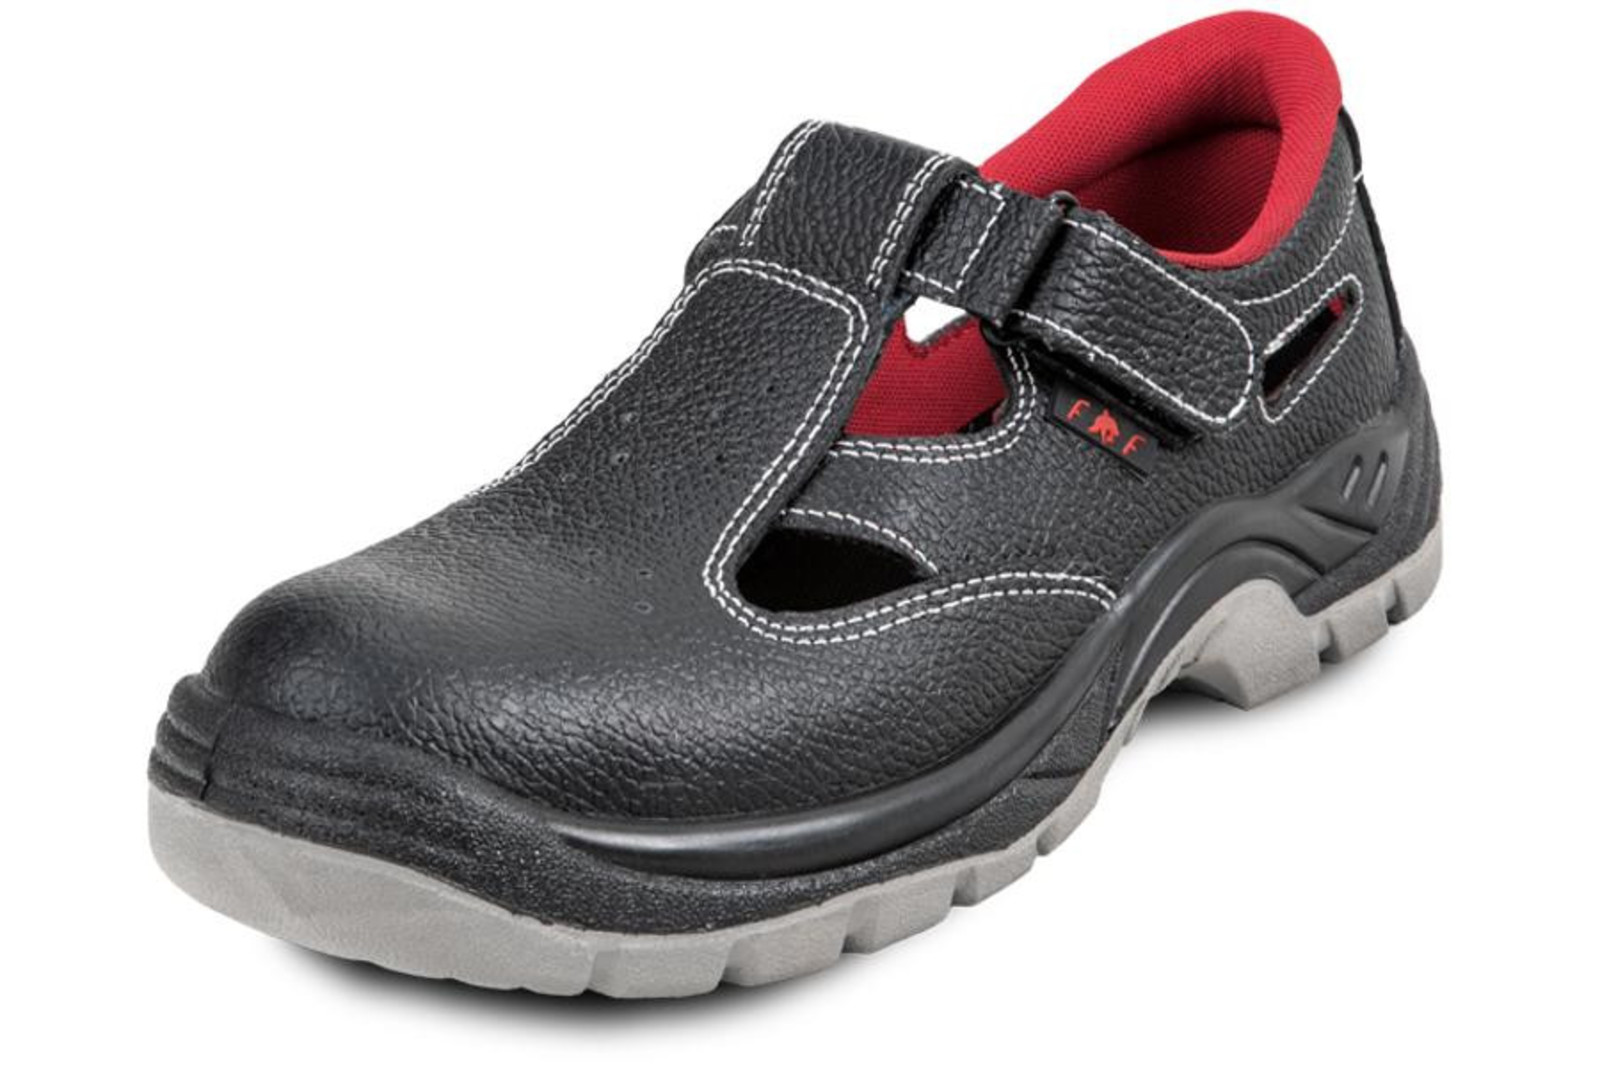 Pracovné sandále Bonn SC 01-002 O1 - veľkosť: 38, farba: čierna